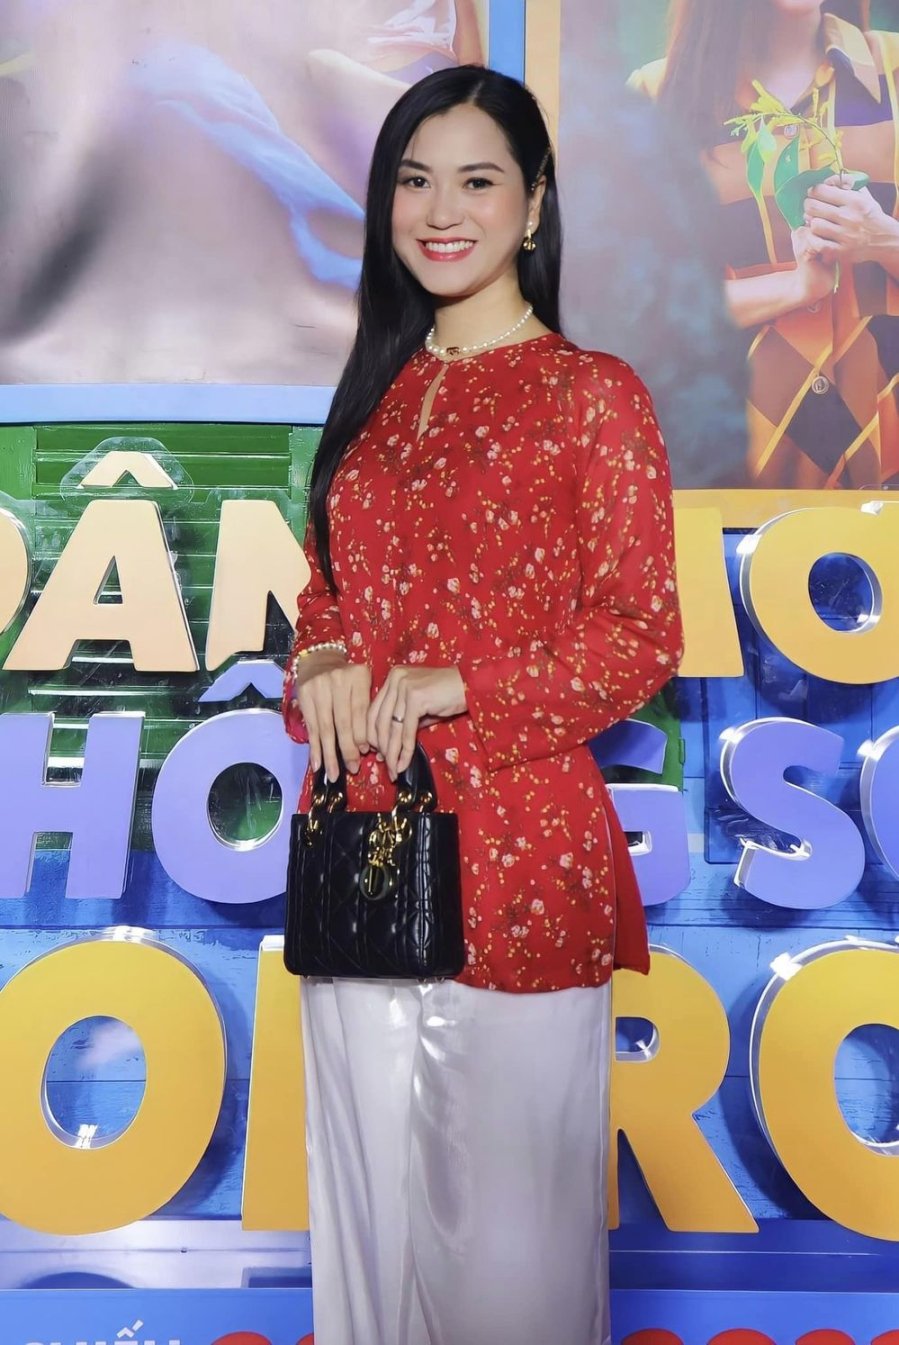 Lâm Vỹ Dạ lên đồ với trang phục truyền thống xứ sở Chùa Vàng, xinh yêu chằng kém gì gái Thái xịn